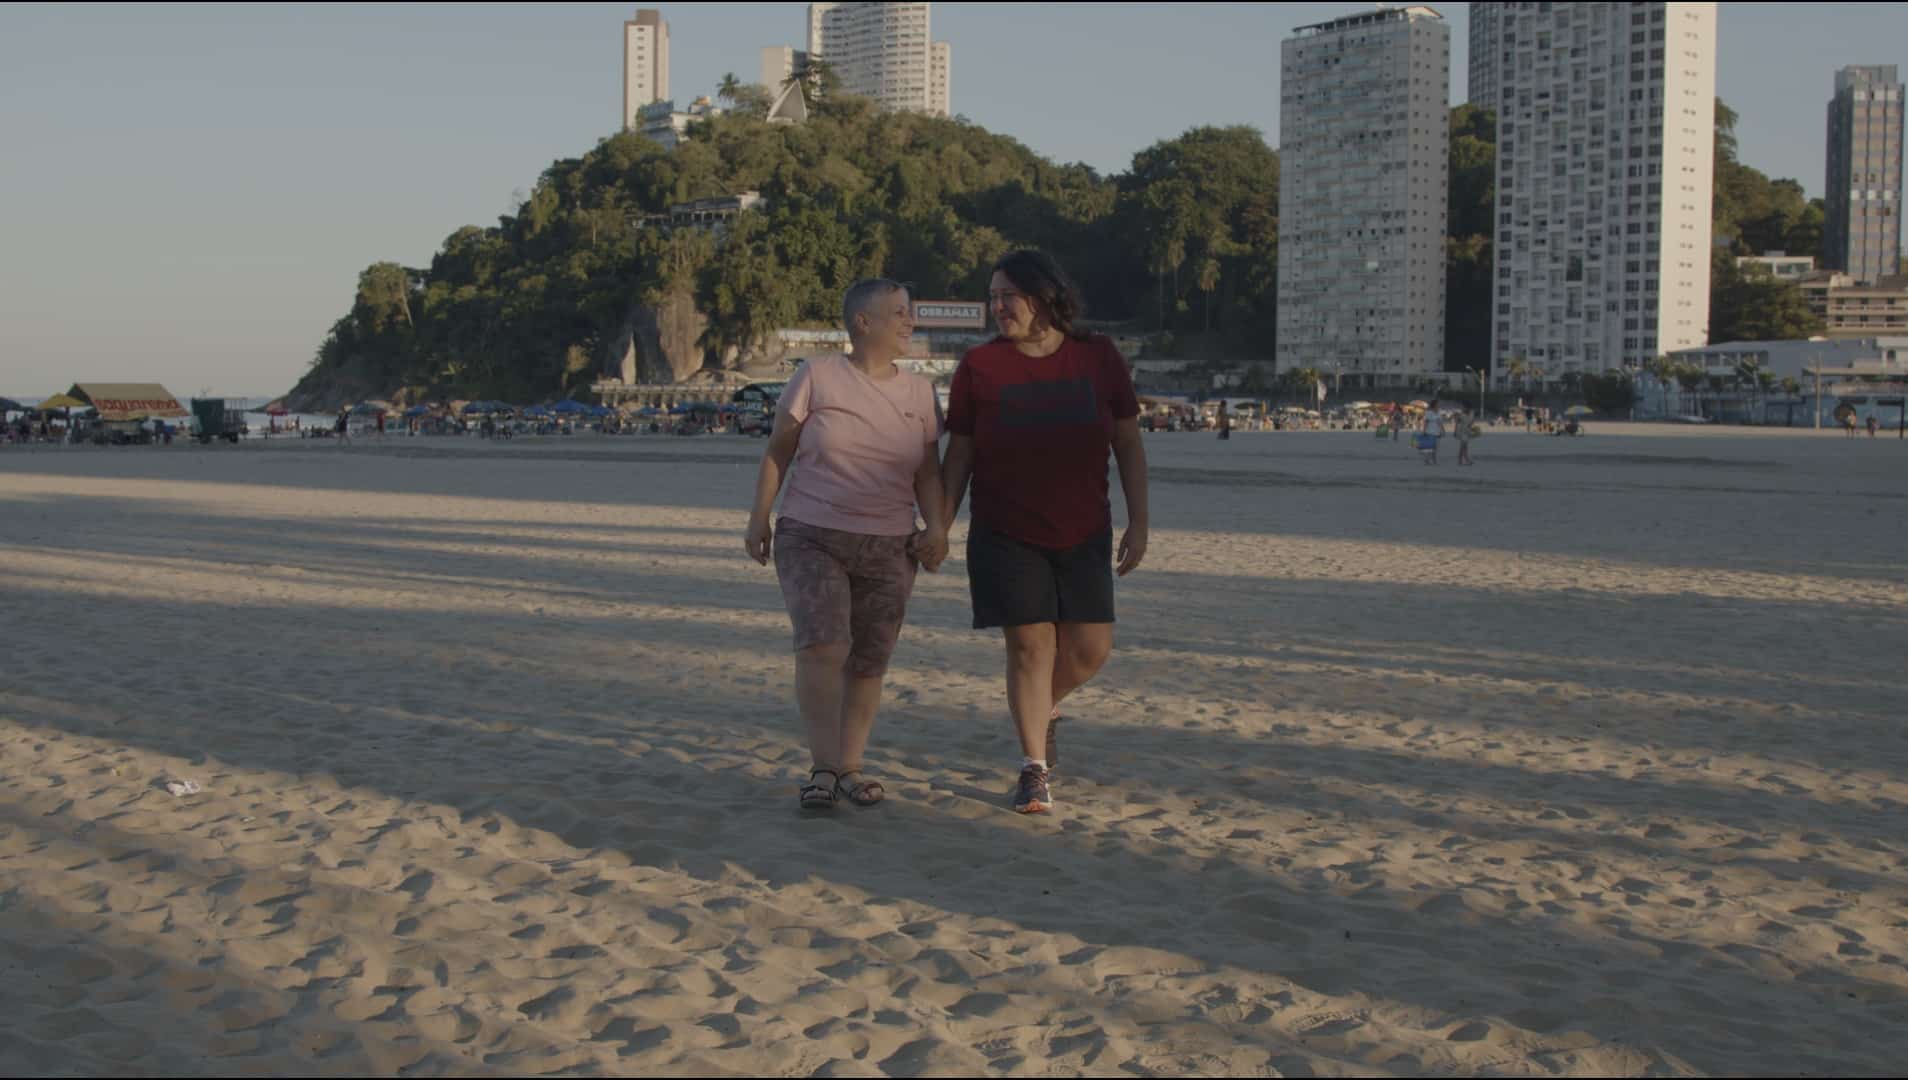 revistaprosaversoearte.com - Série documental Corpo, Afeto e Revolução explora diversas perspectivas da comunidade LGBTQIA+